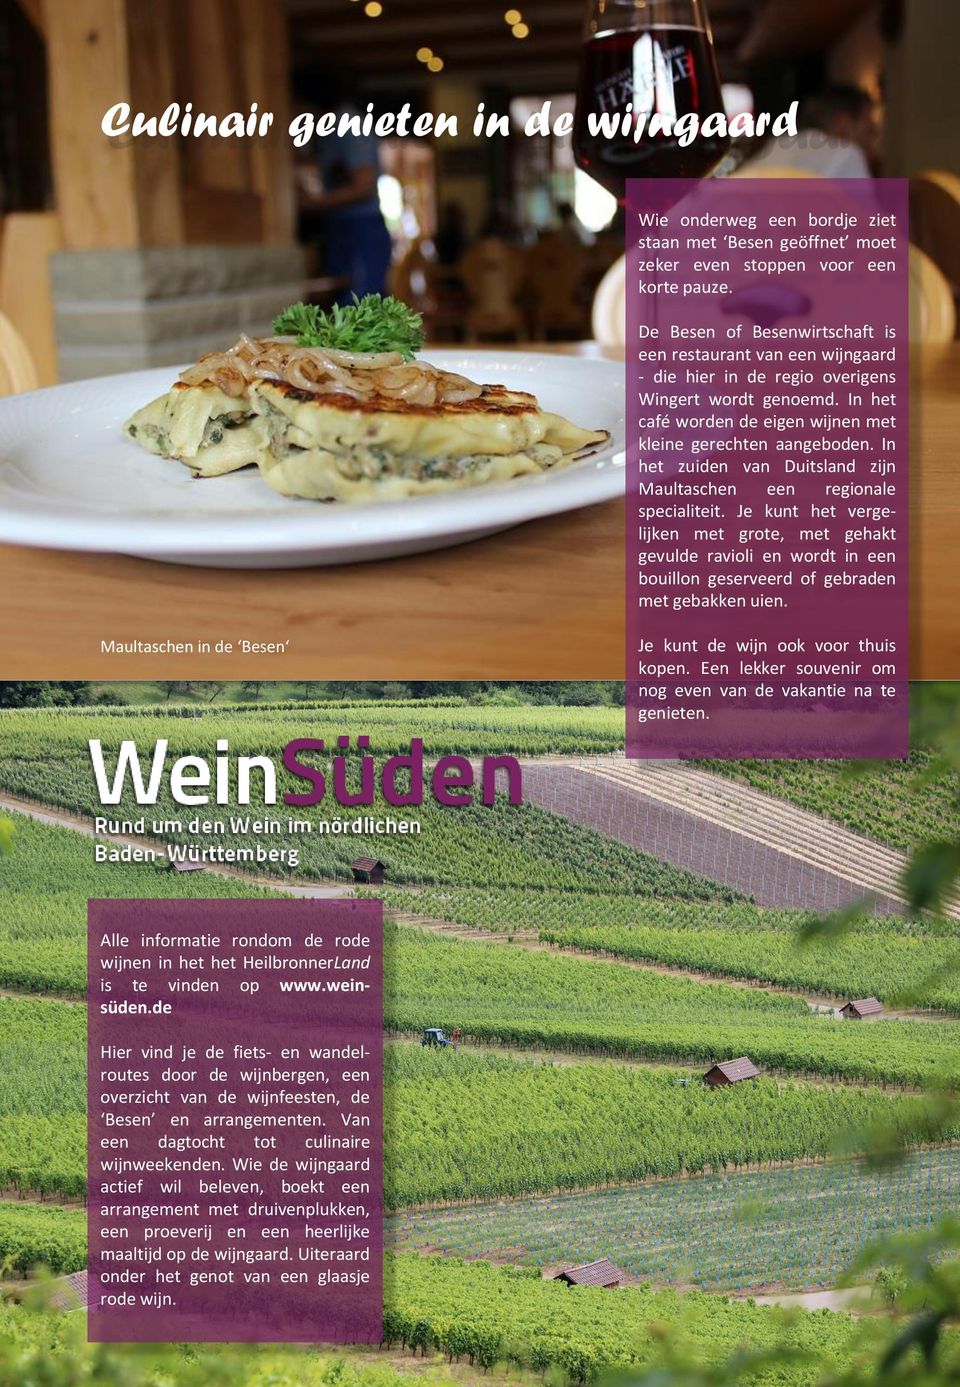 In het zuiden van Duitsland zijn Maultaschen een regionale specialiteit.